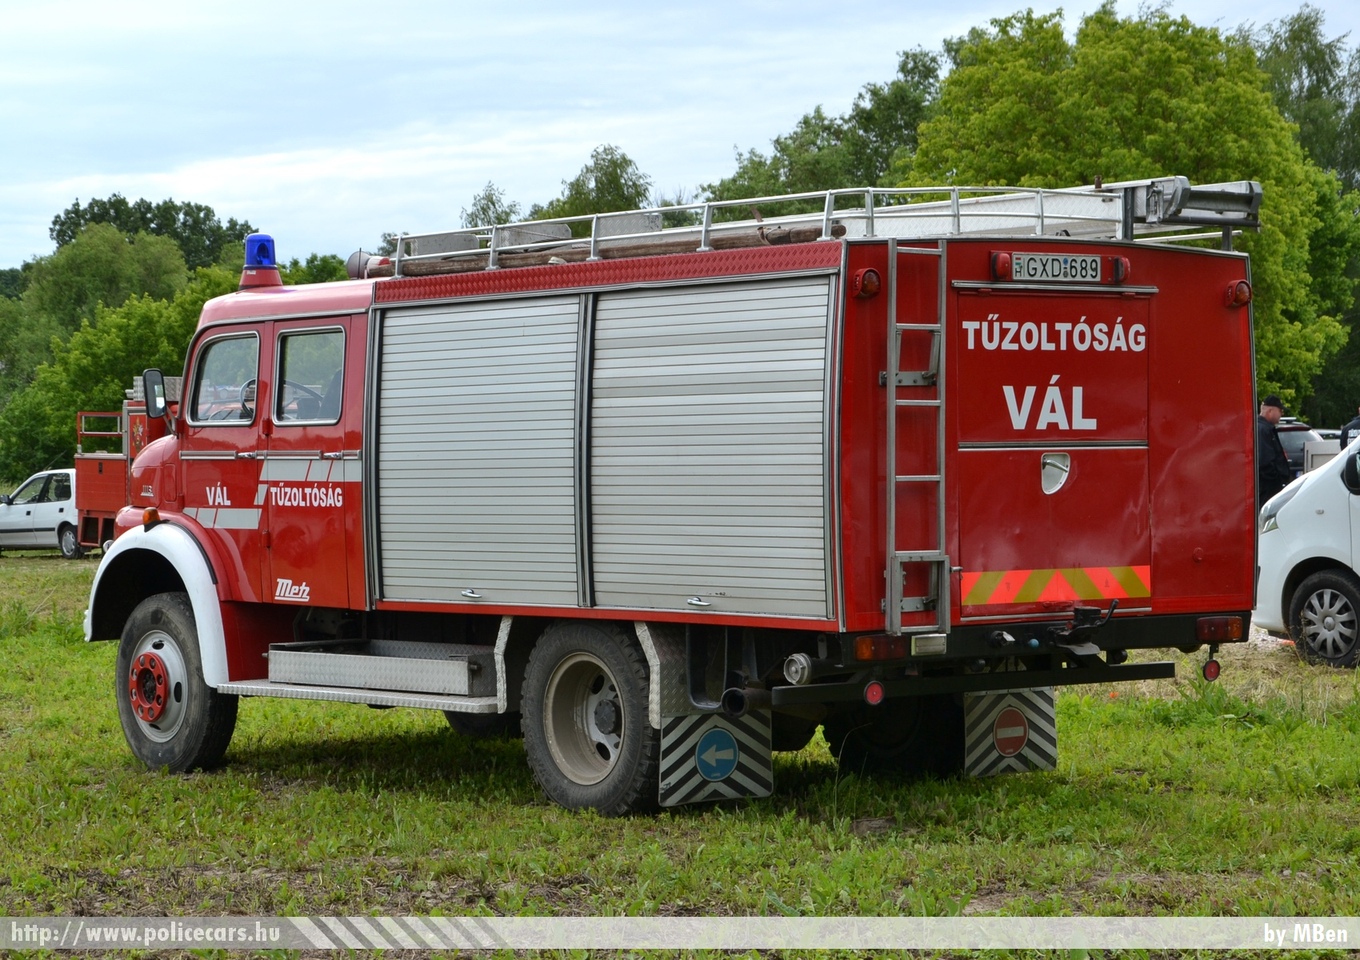 Mercedes 1113 Metz, Váli Tûzoltó Egyesület, fotó: MBen
Keywords: tûzoltó tûzoltóautó tûzoltóság magyar Magyarország ÖTE hungarian Hungary fire firetruck GXD-689